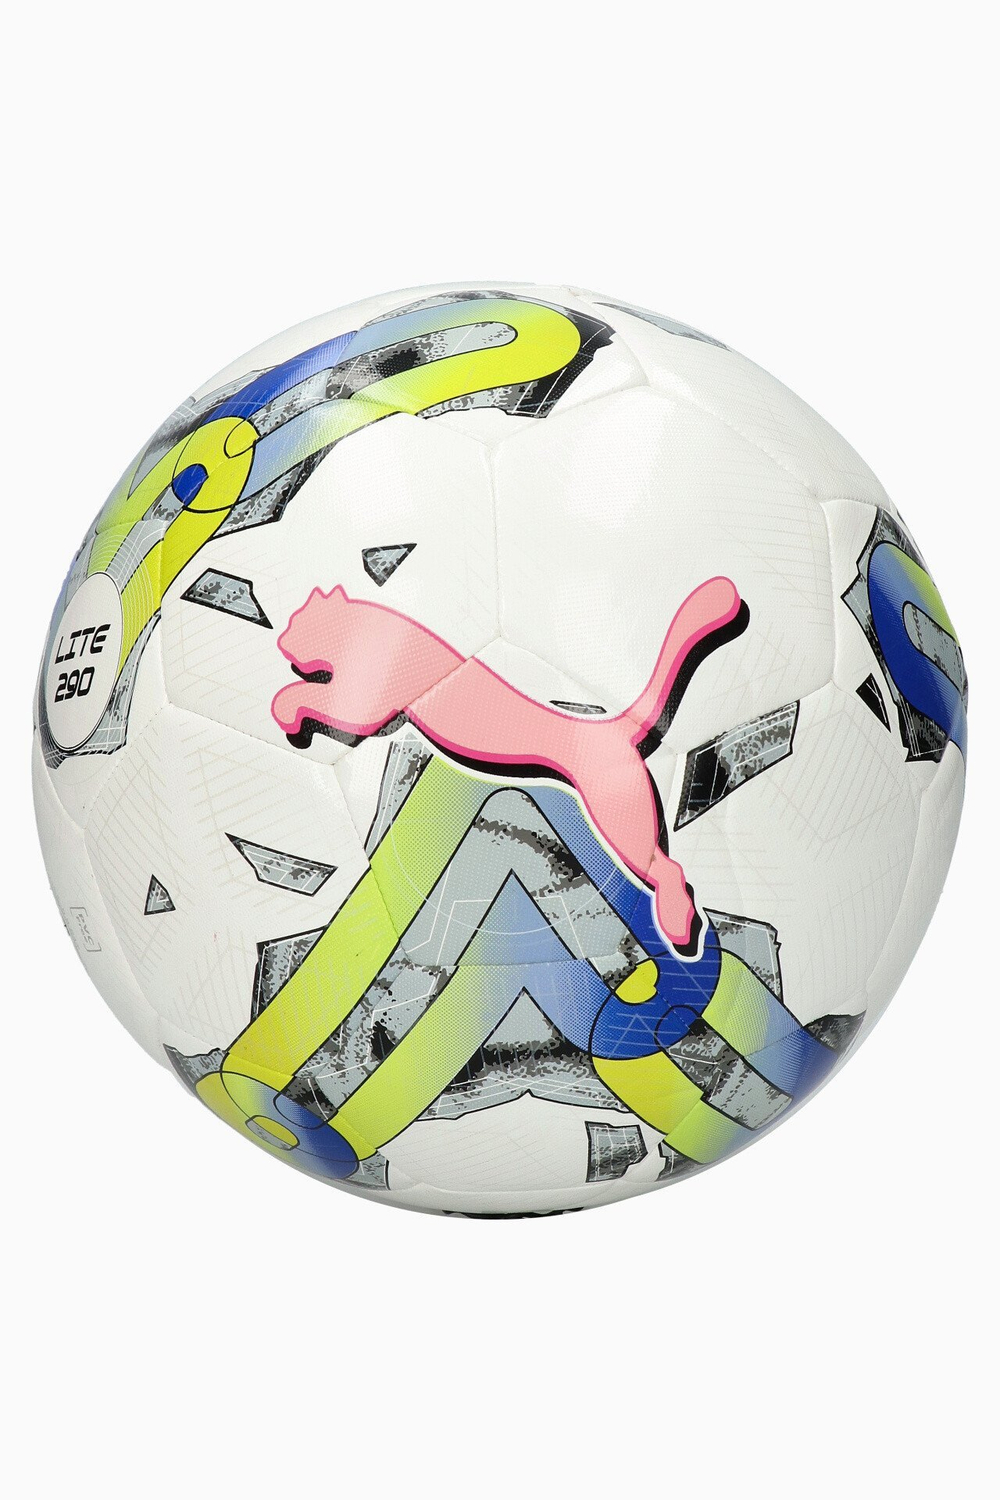 Футбольный мяч Puma Orbita 5 Hybrid Lite 290 размер 4